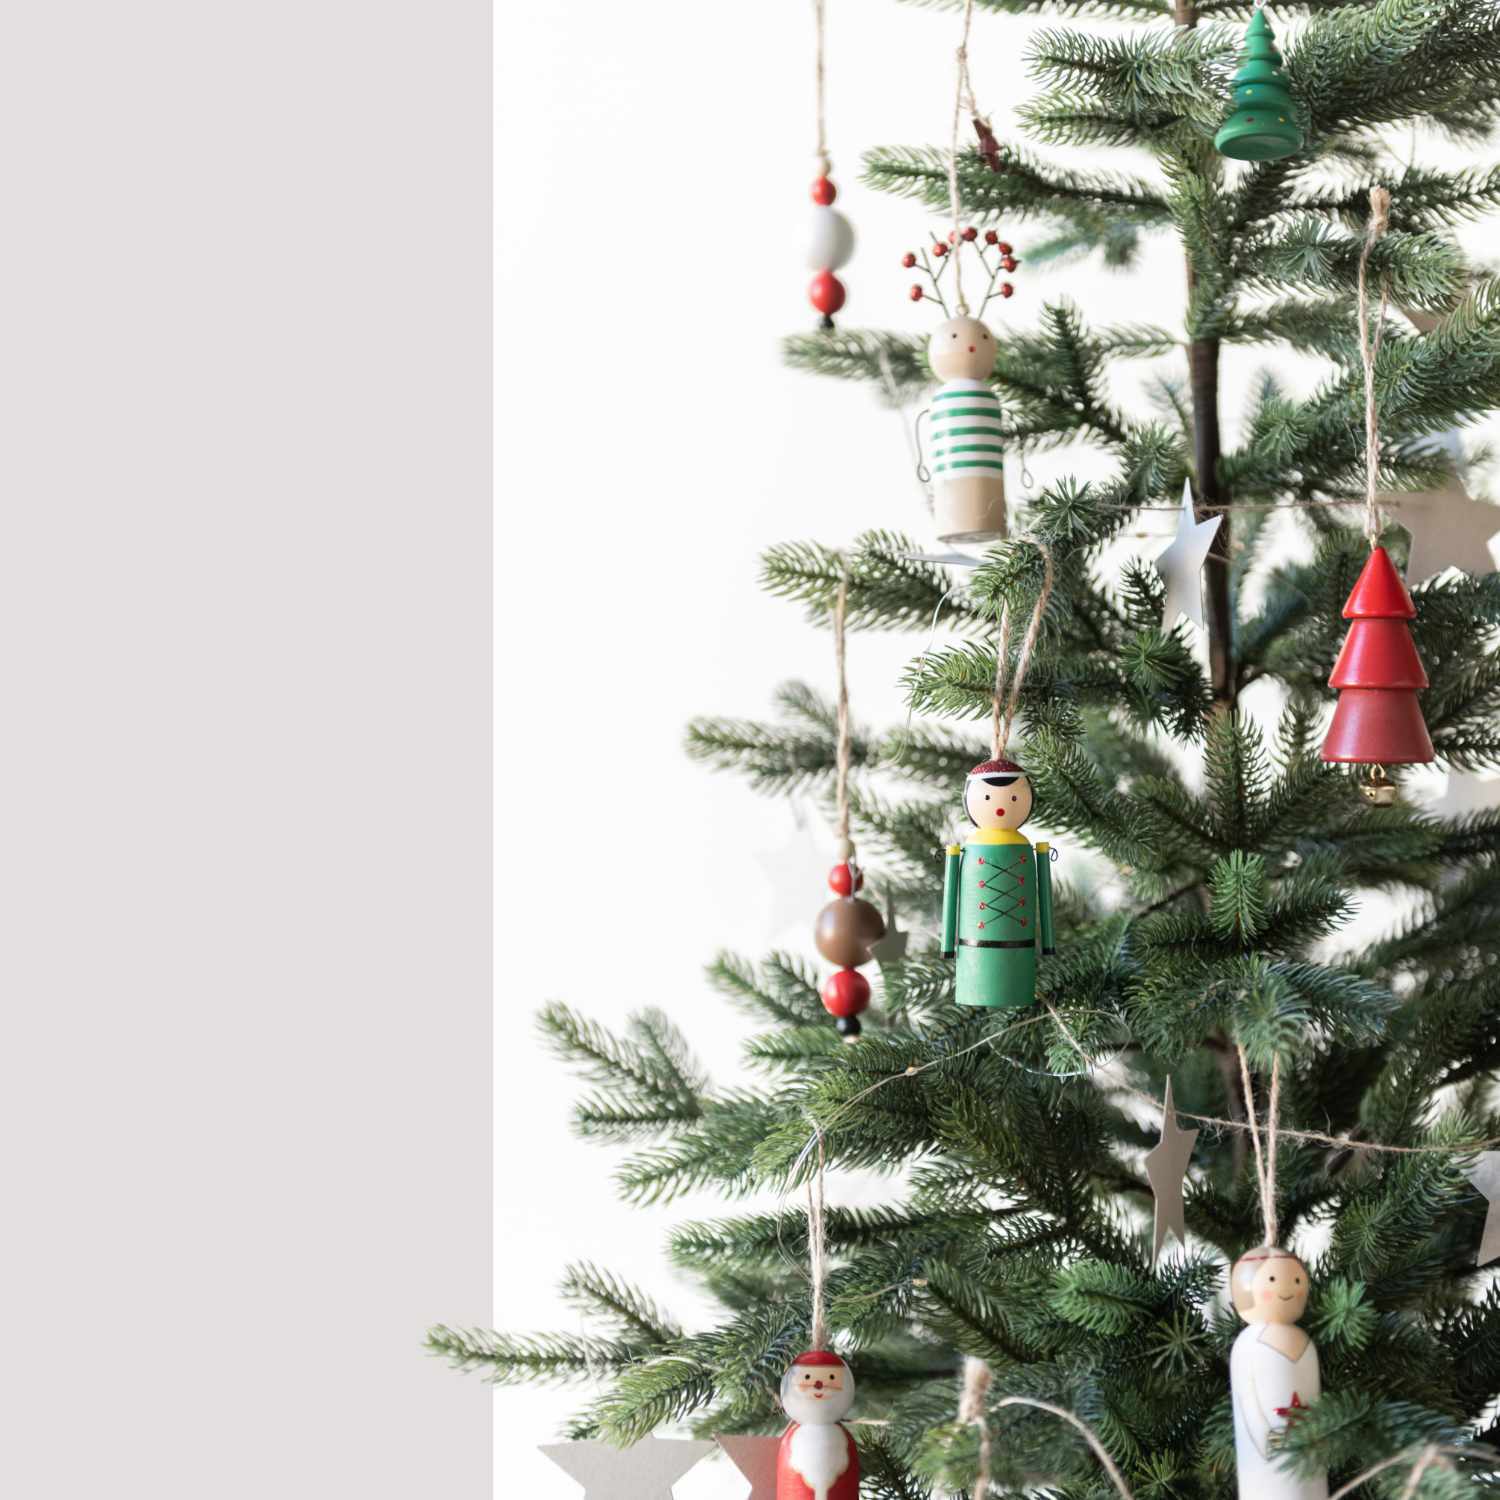 Holzhänger Weihnachtsbaum grün 3,5x6cm